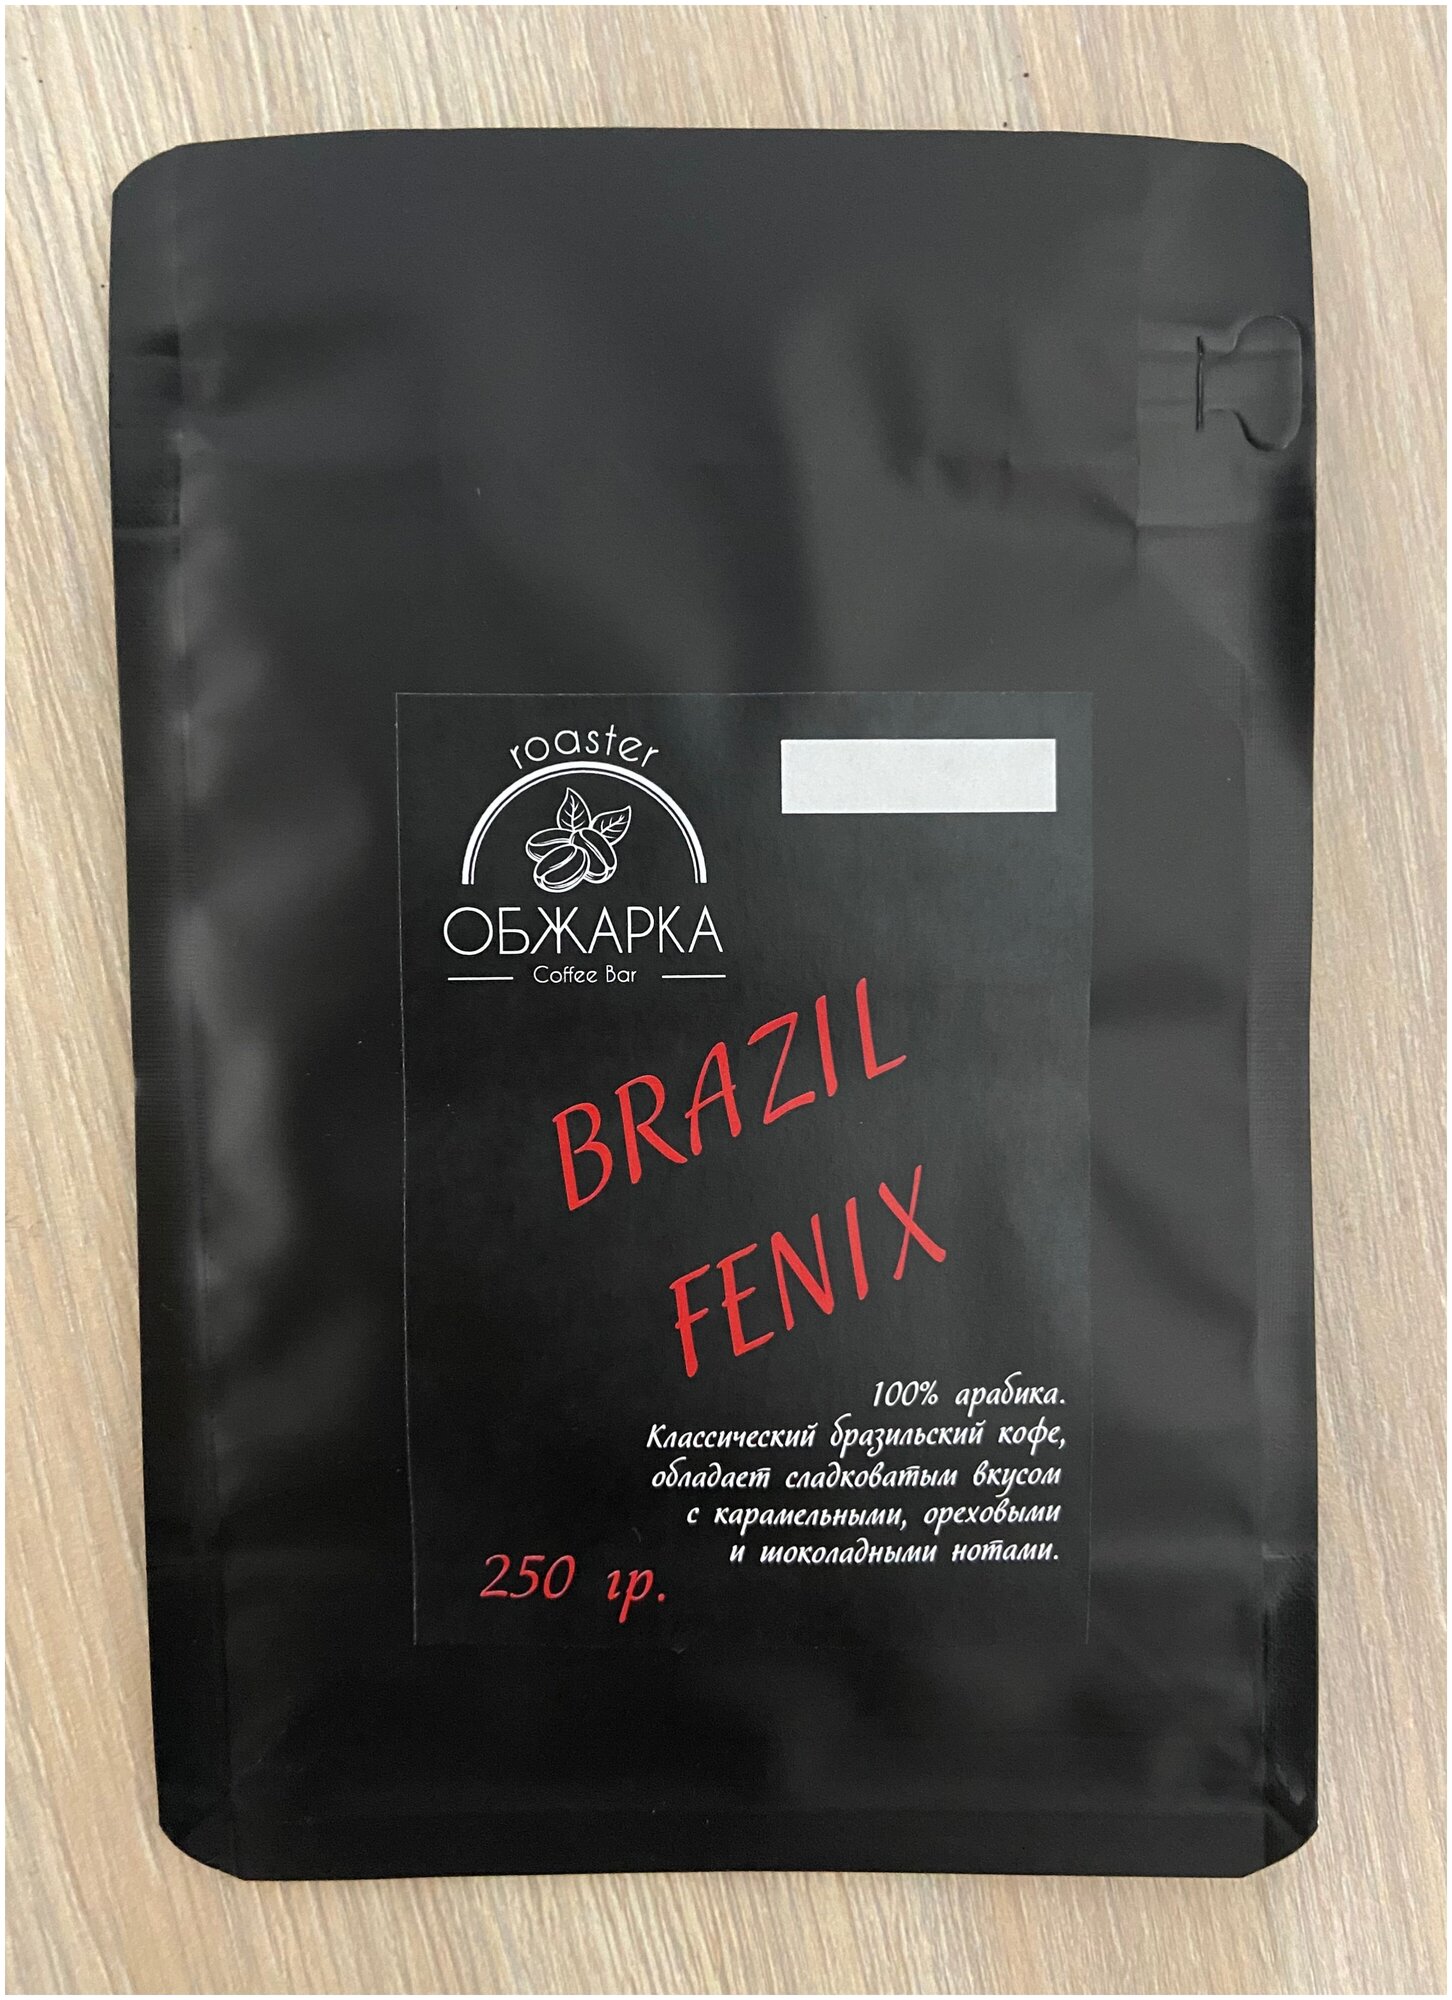 Кофе в зернах свежеобжаренный Бразилия Феникс